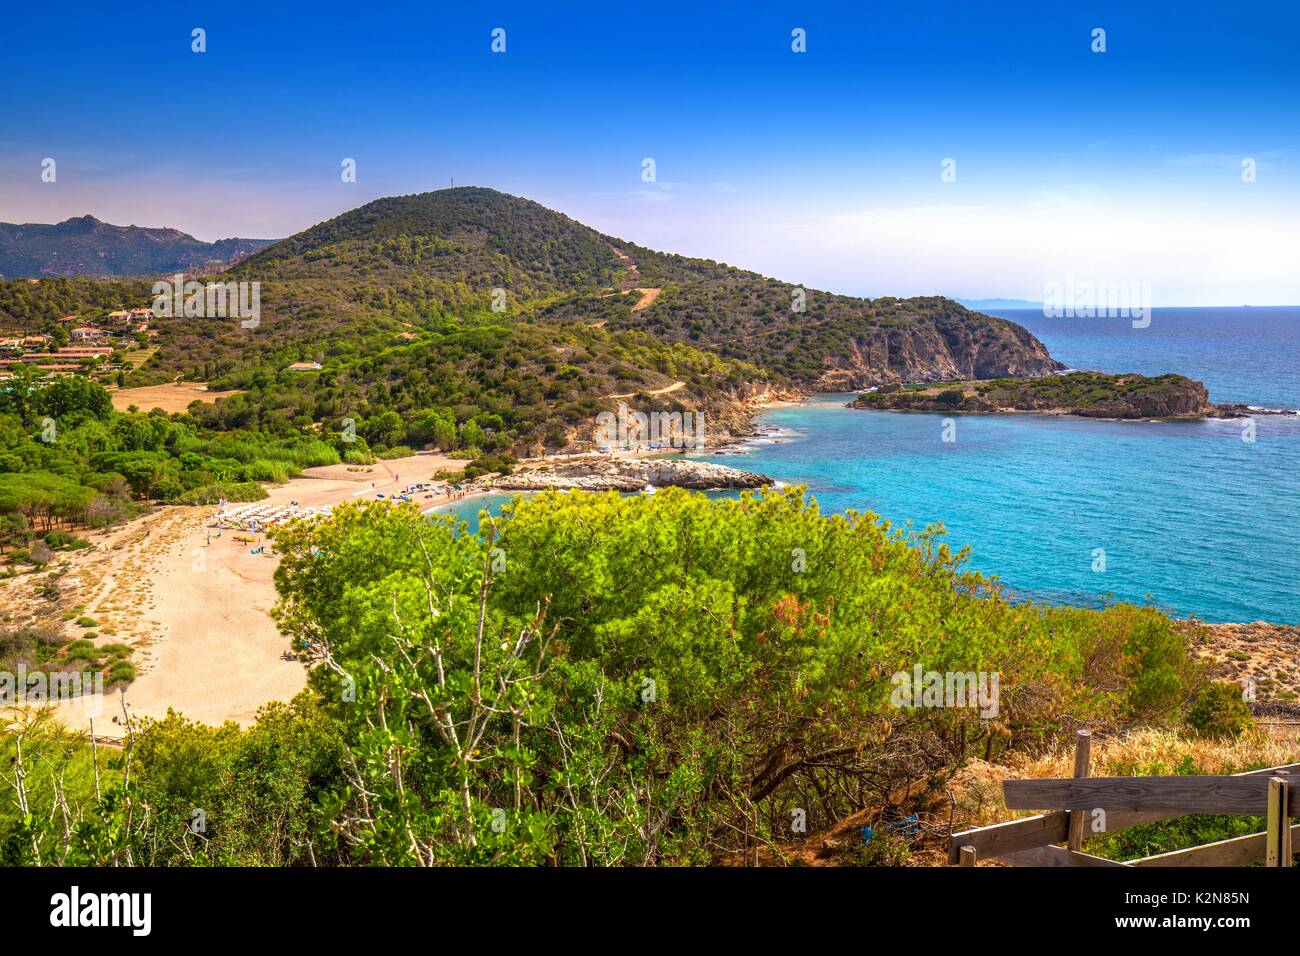 Su Portu Strand, Chia, Sardinien, Italien, Europa. Sardinien ist die zweitgrößte Insel im Mittelmeer Stockfoto